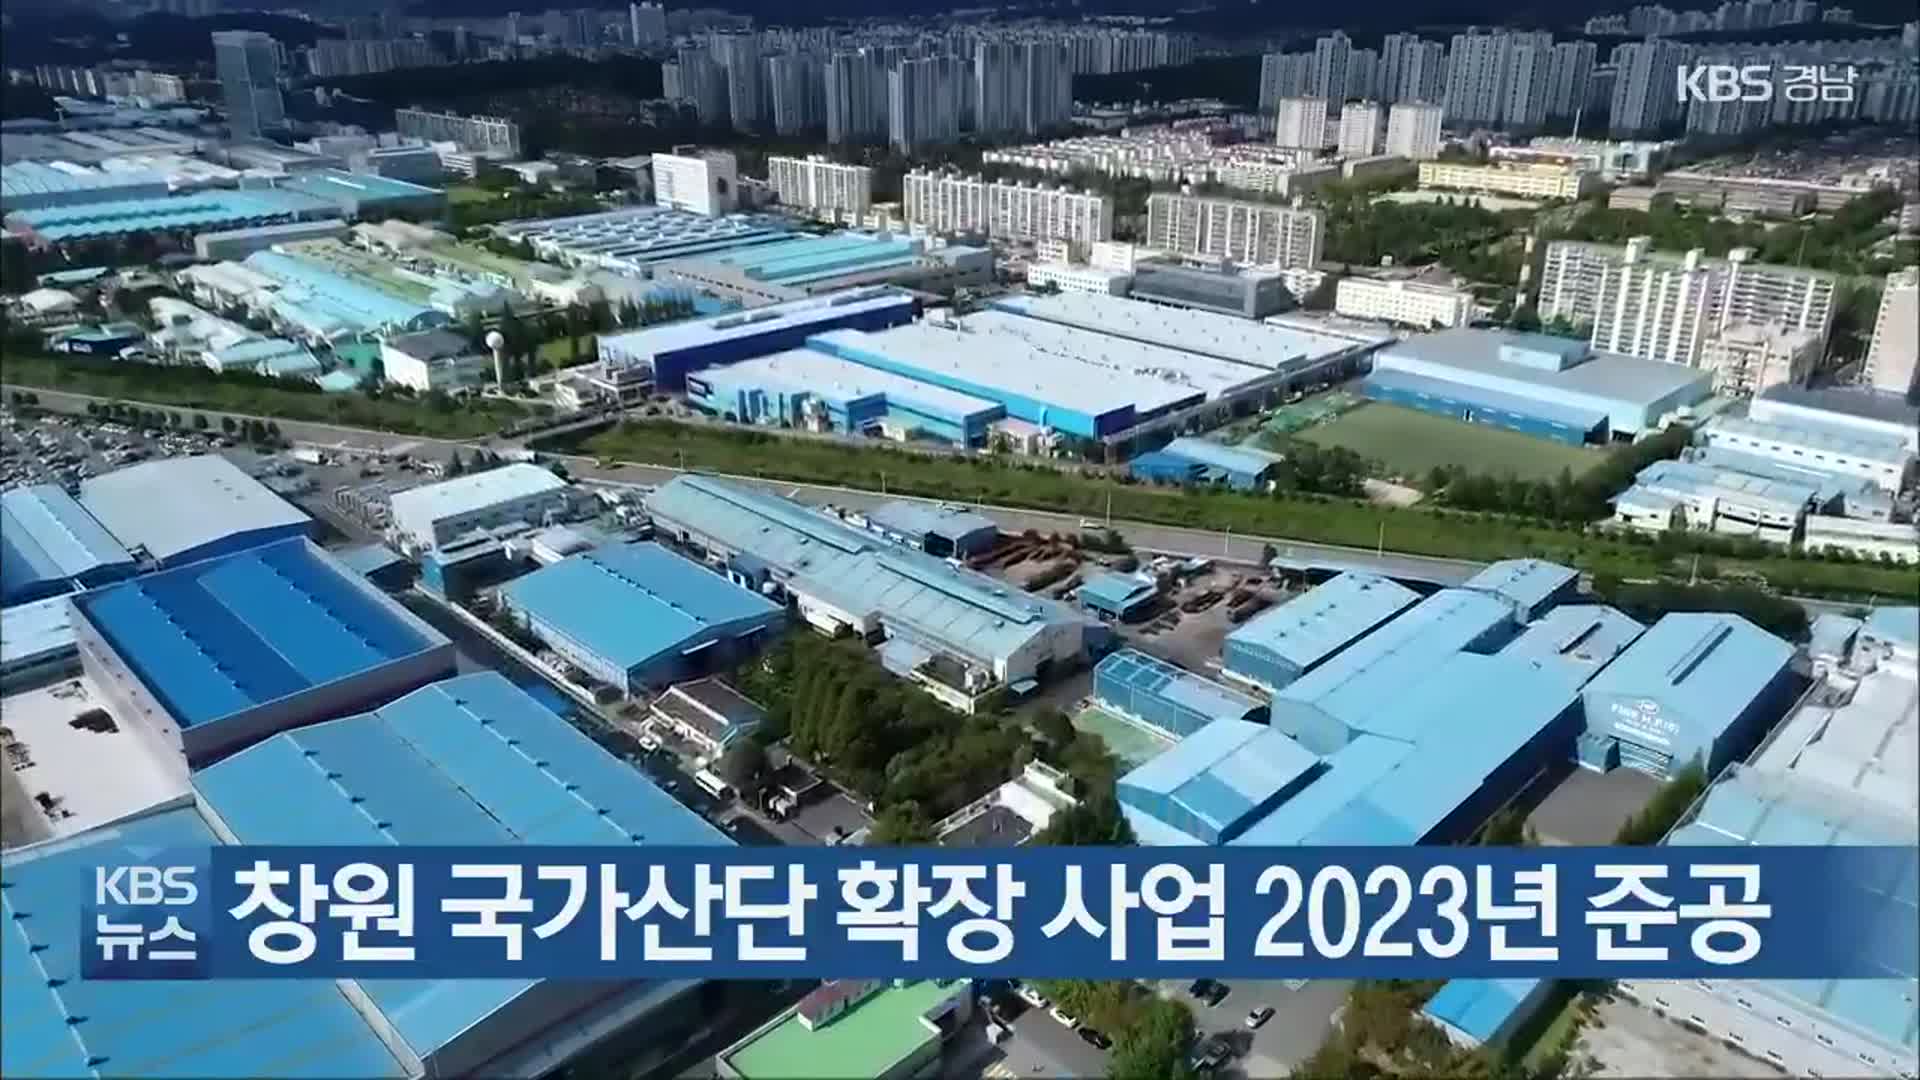 창원 국가산단 확장 사업 2023년 준공